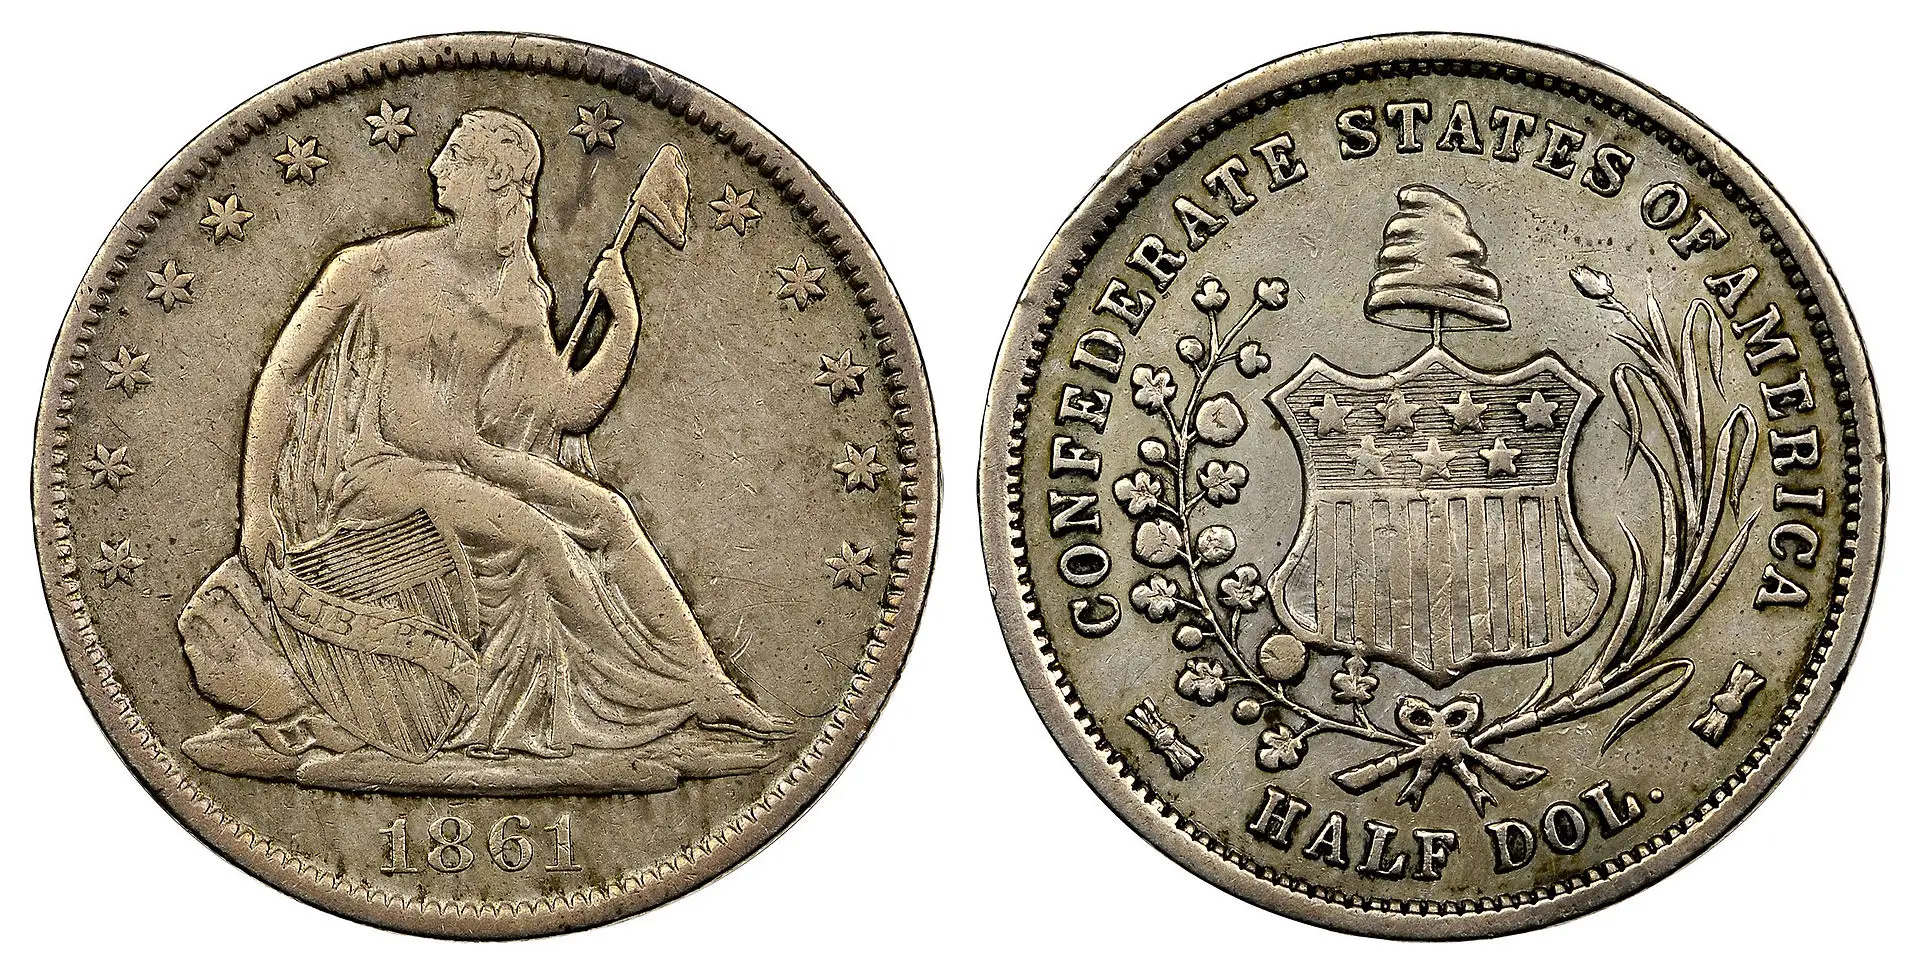 1861 Confederate Half Dollar